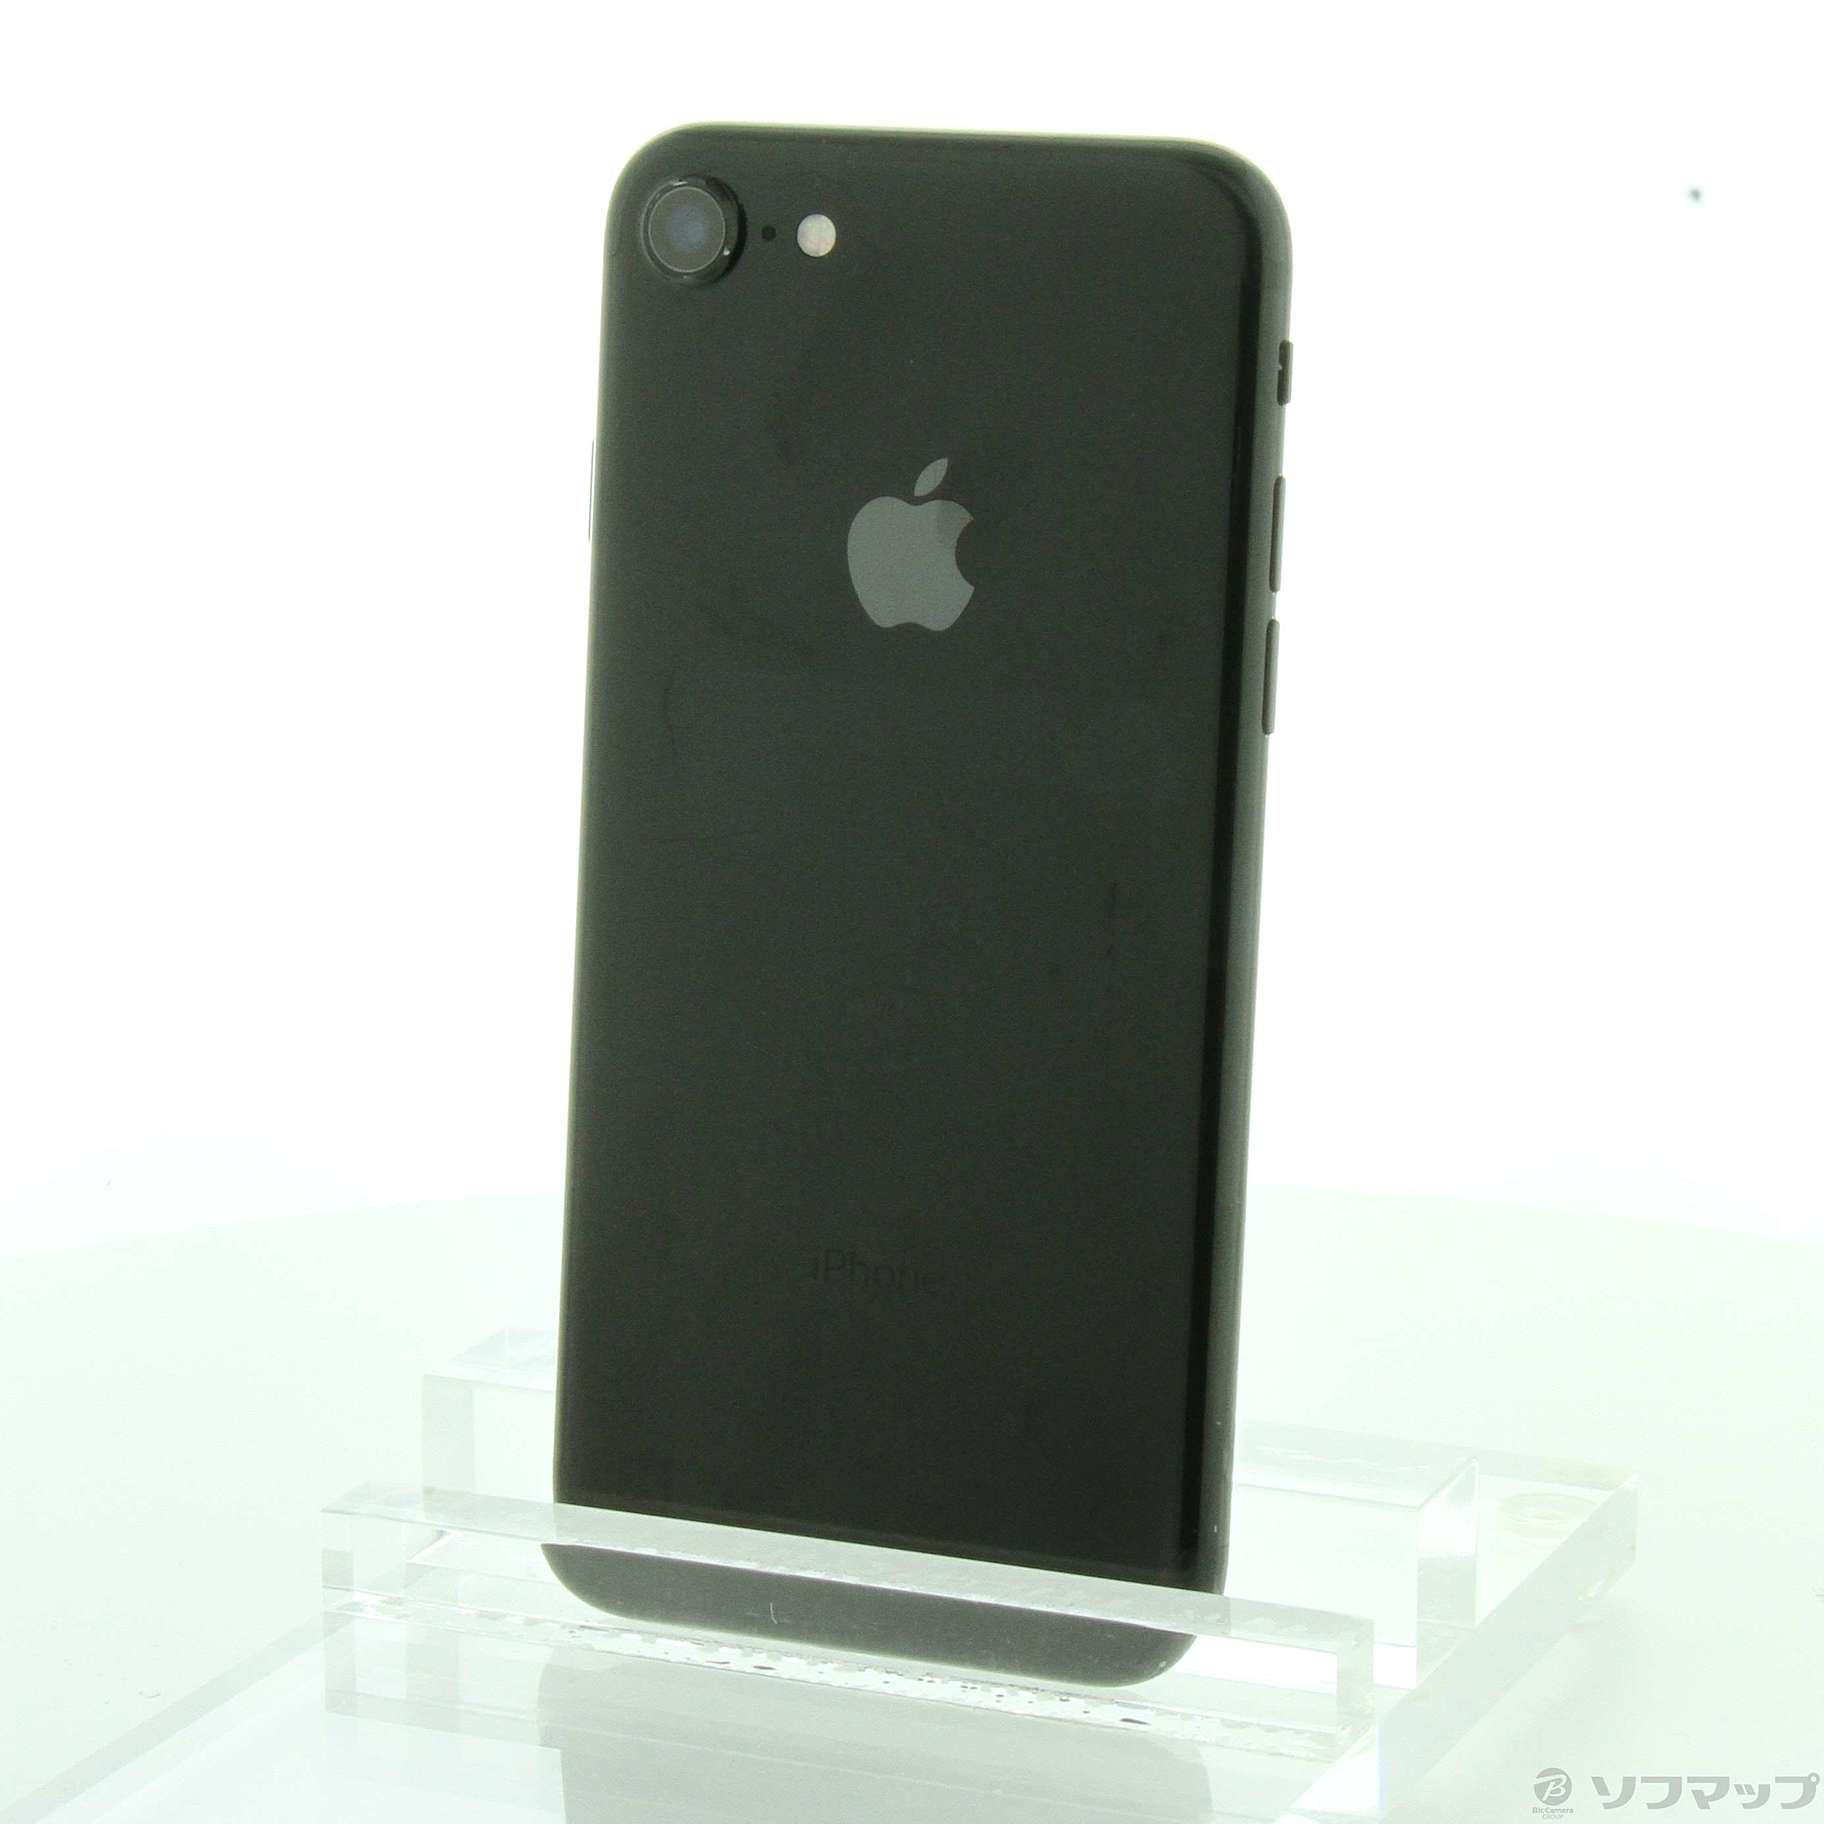 値下げ中【新品】iPhone7 128GB SIMフリー Jetblack-